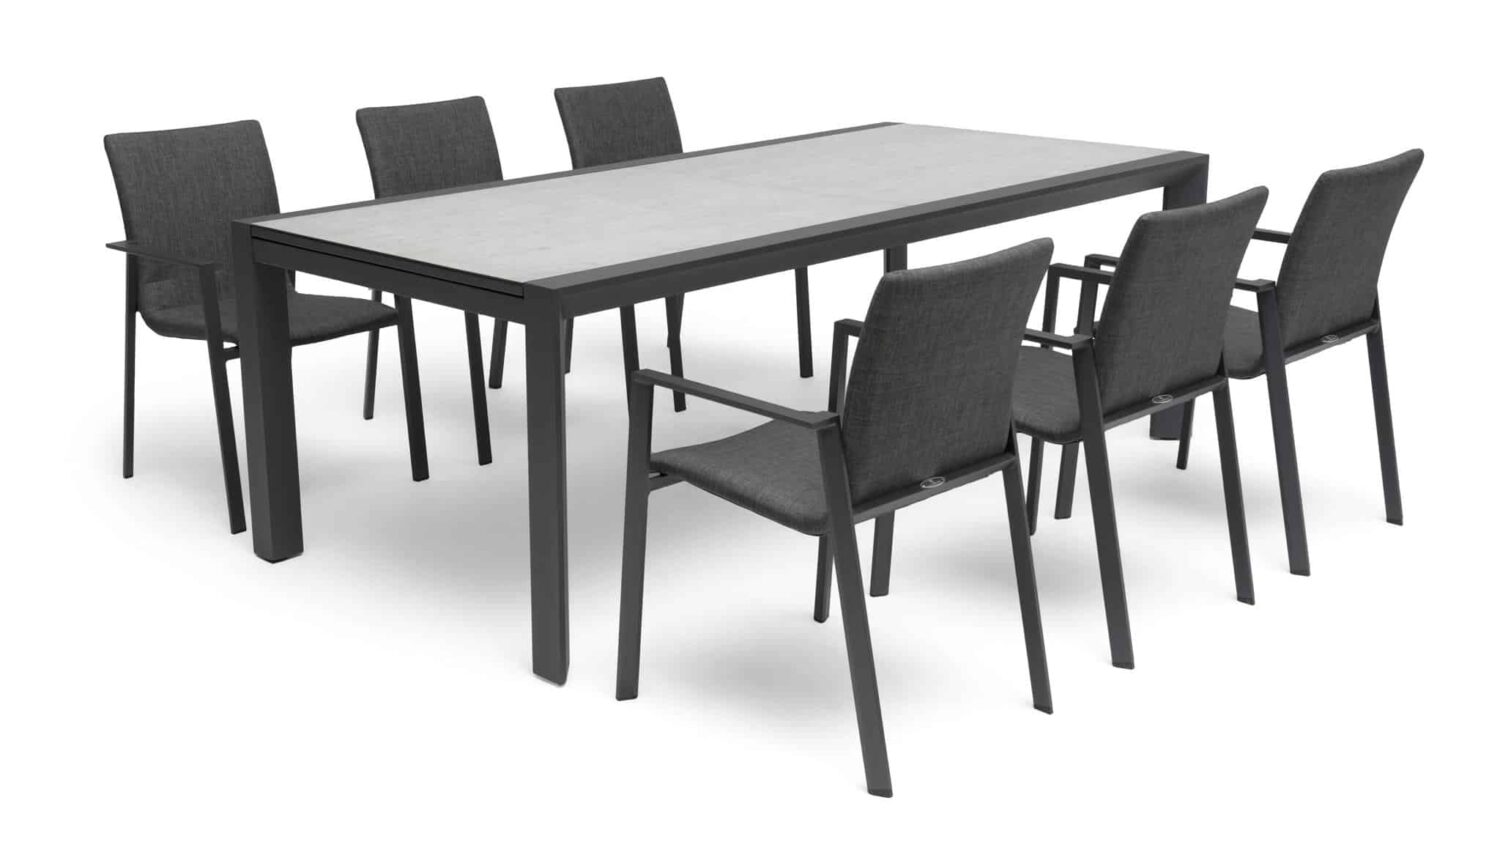 Hillerstorp Borgdala Matgrupp grå, bord med glasskiva och sex matstolar med textilen.